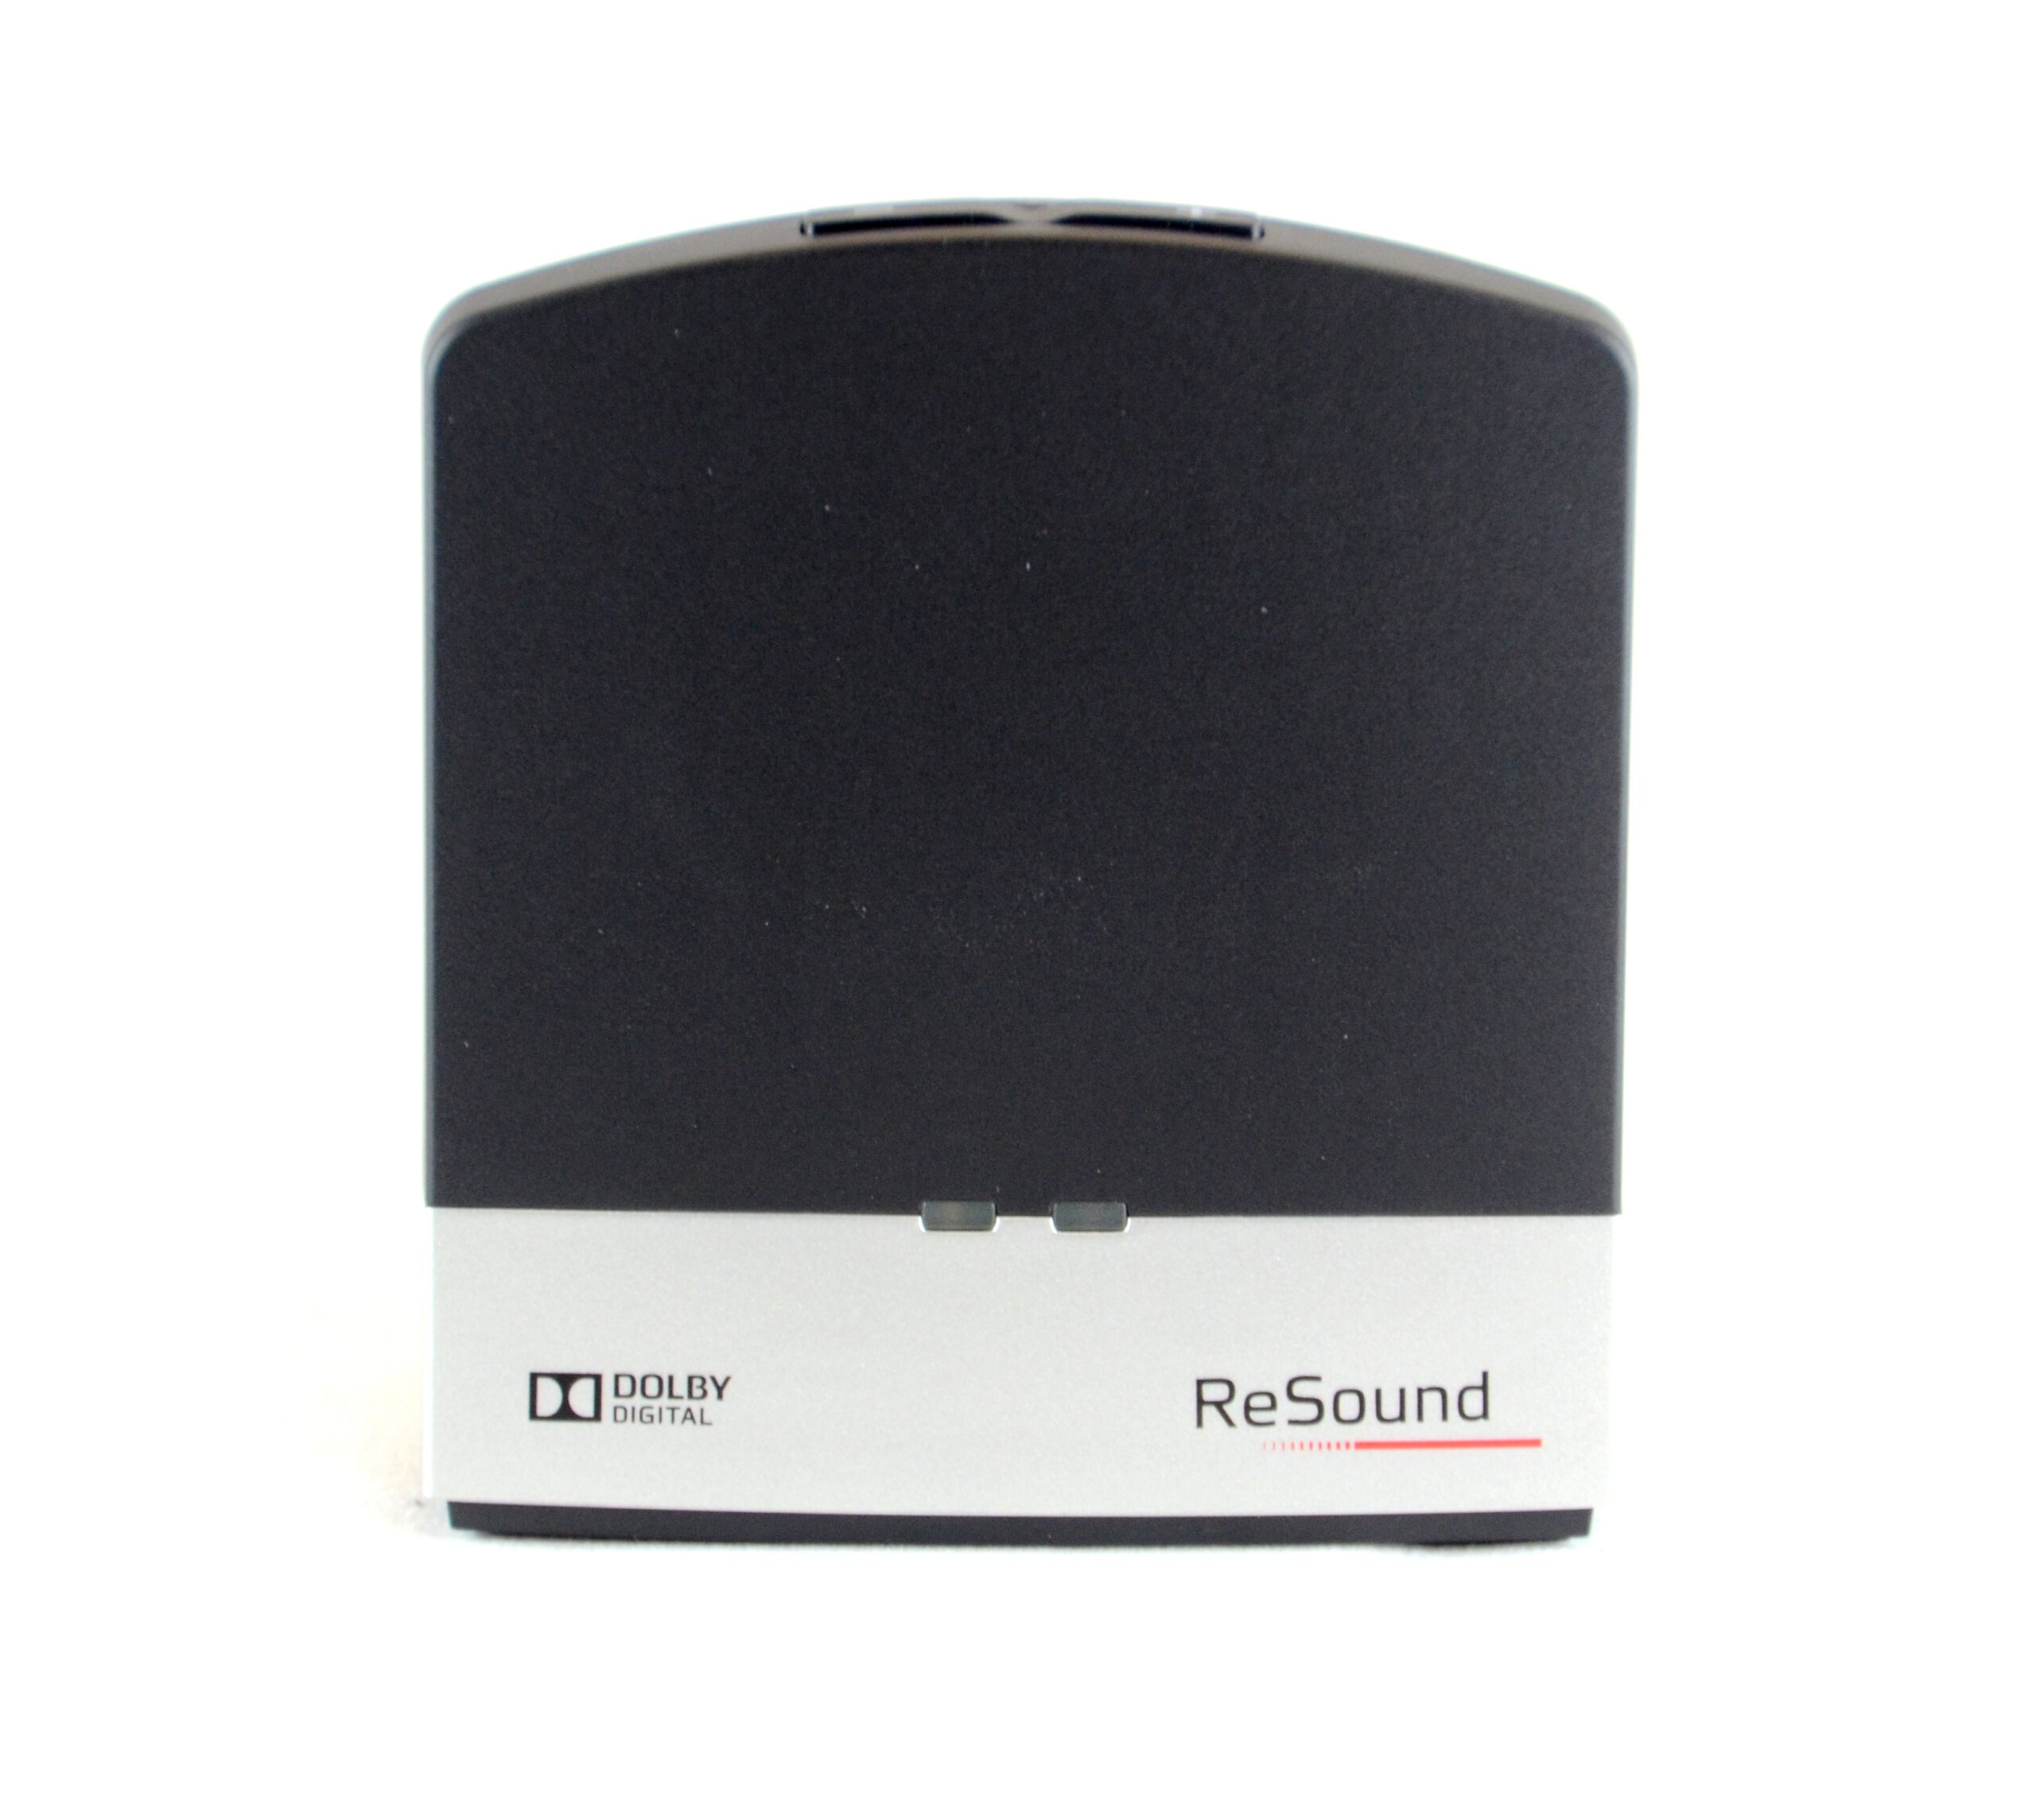 ReSound TV sender2 direkte streaming til Resound høreapparater